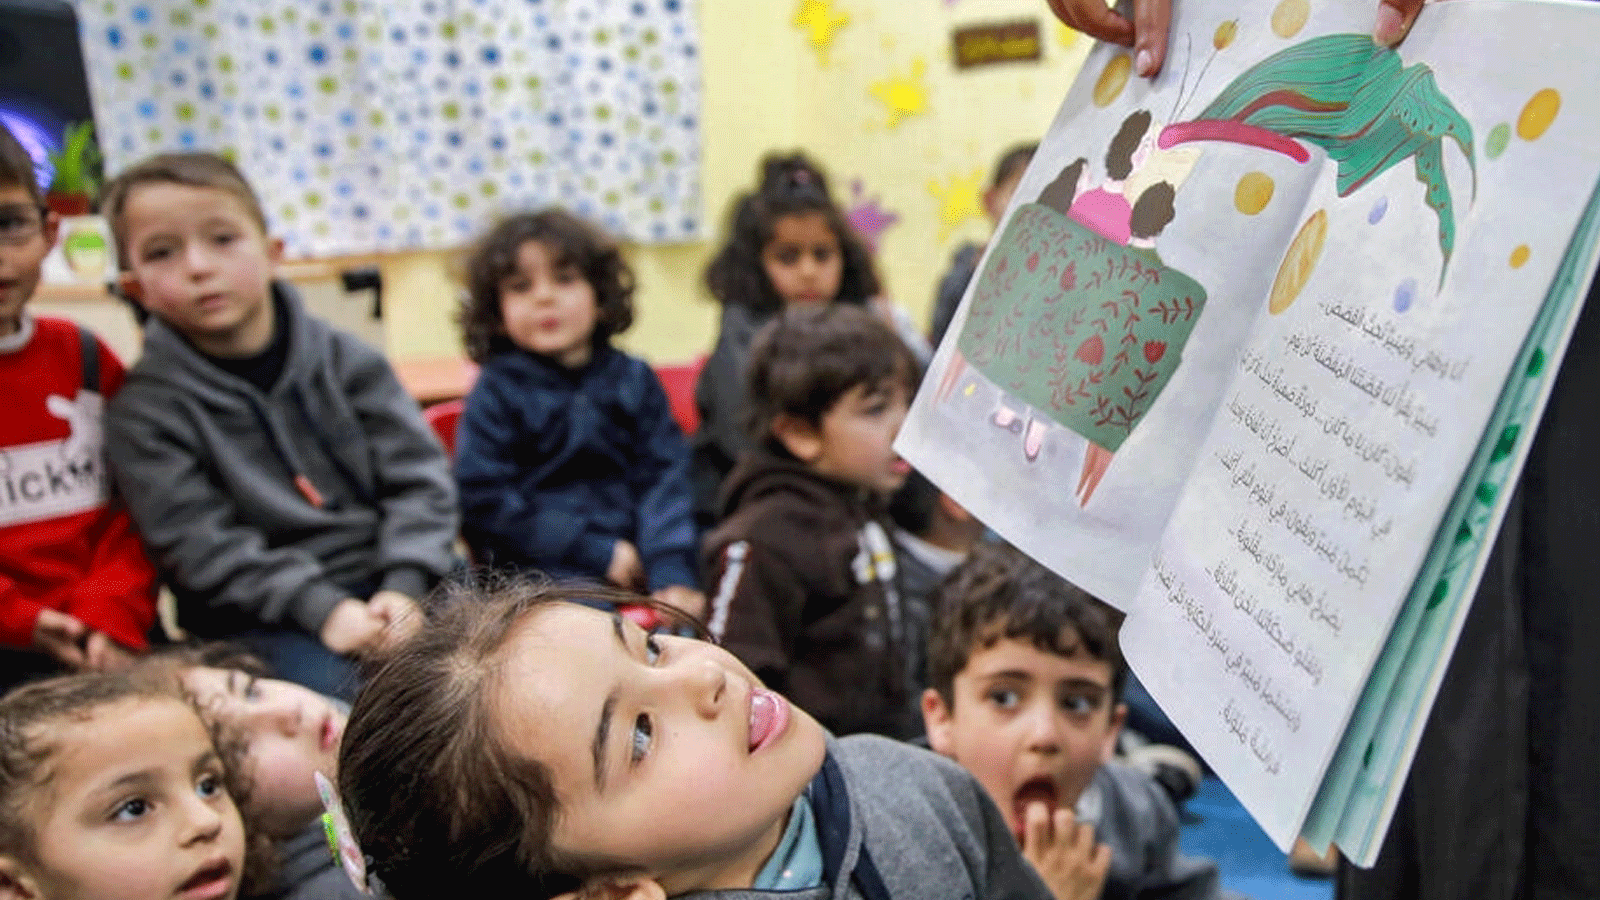 المعلمة الأردنية هدى أبو الخير تقرأ القصص على الأطفال في أحد الفصول الدراسية في عمان كجزء من مبادرة 